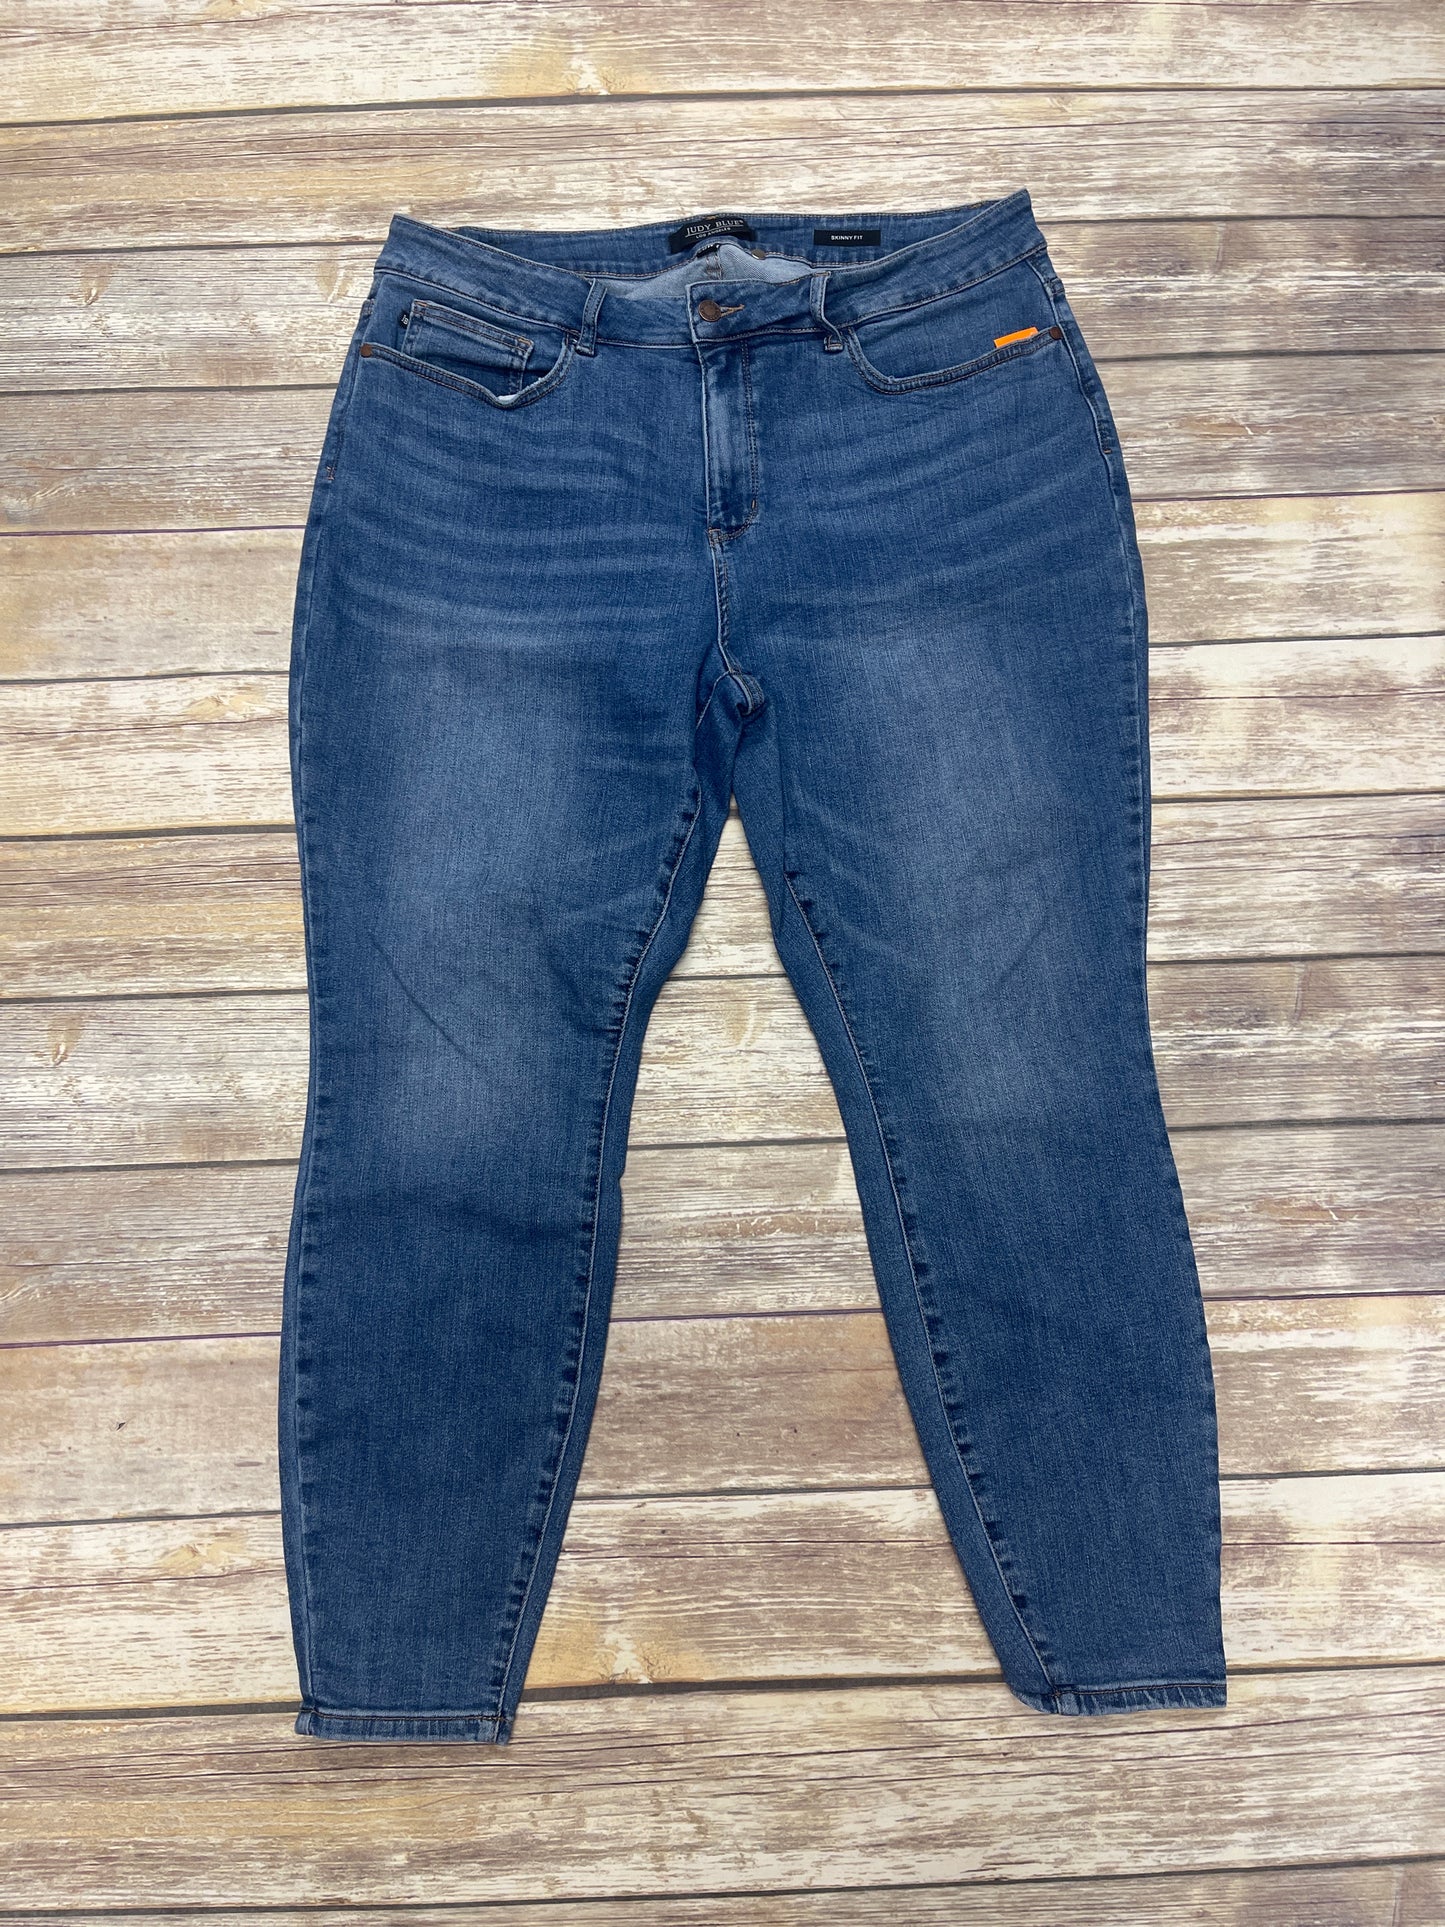 Jeans Skinny By Judy Blue  Size: 20W